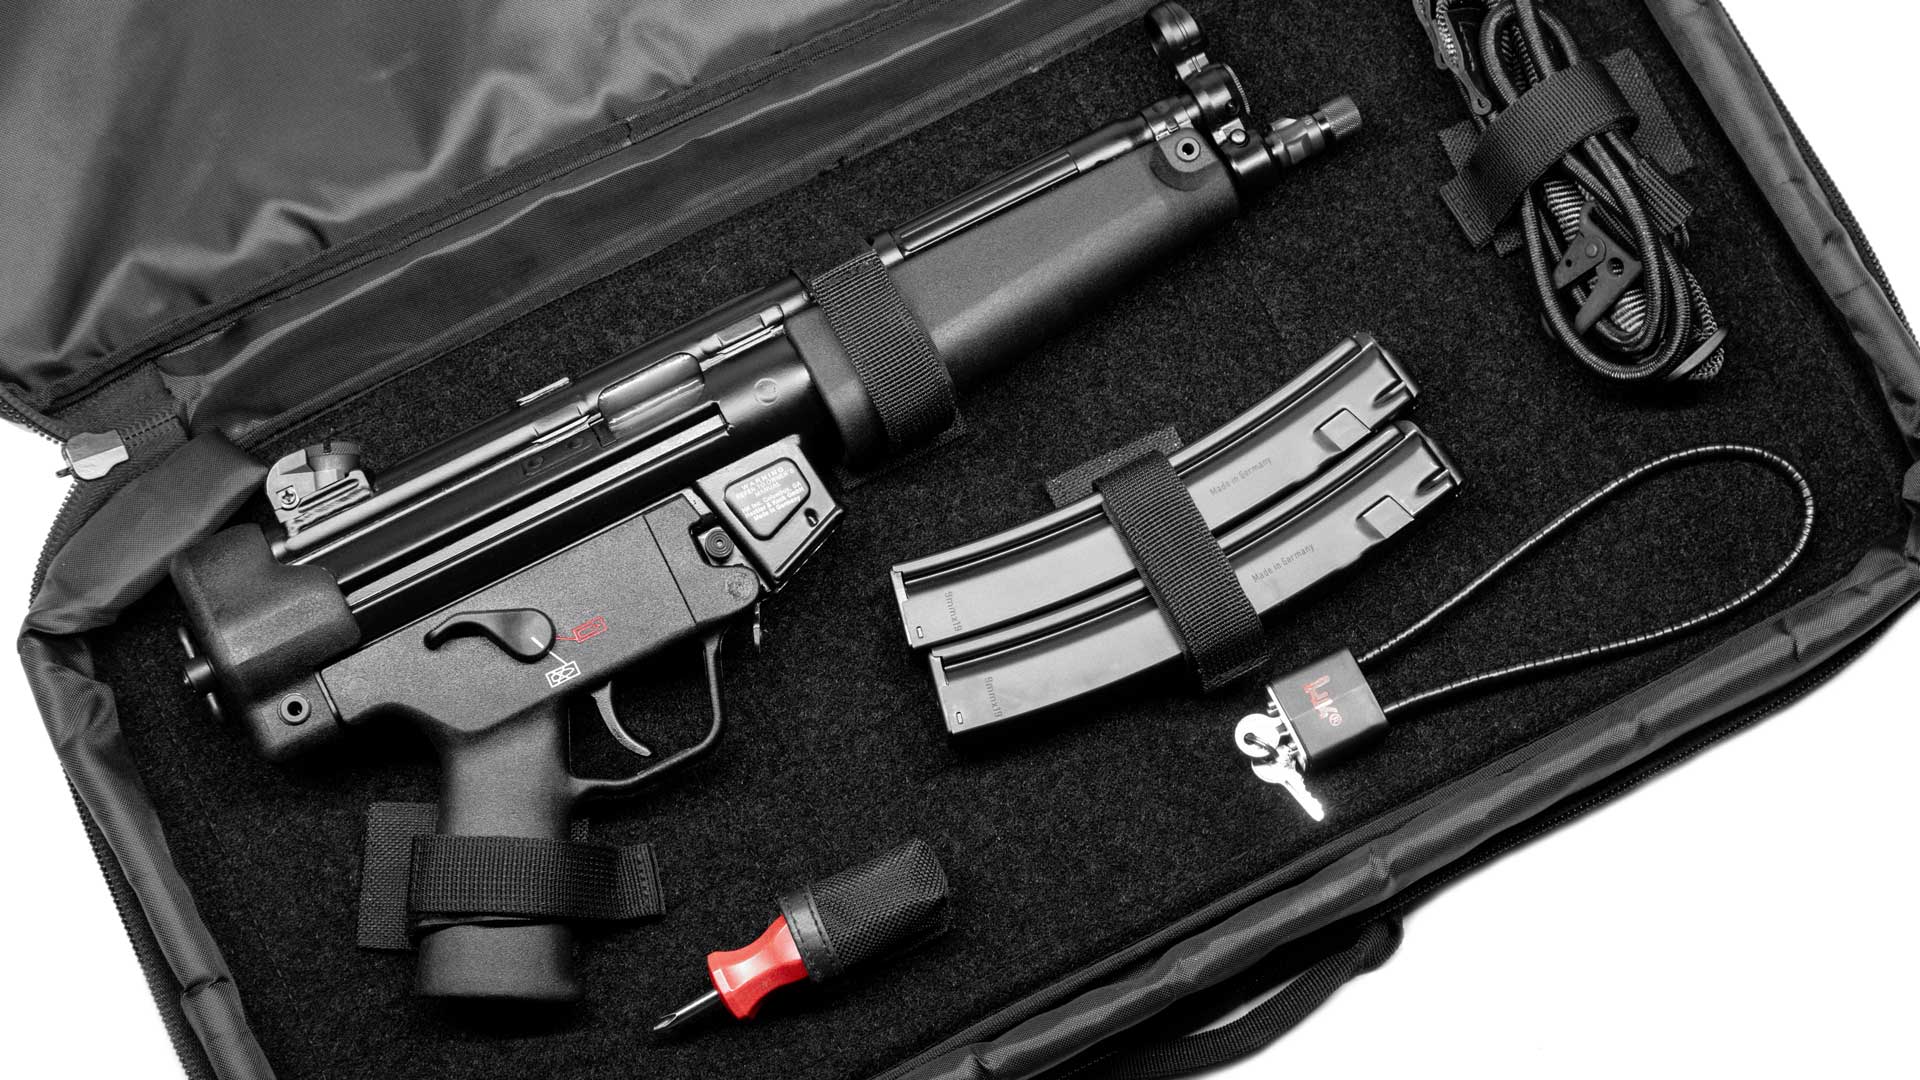 case bag compartment black enclosure with gun parts pistol handgun magazine tools lock